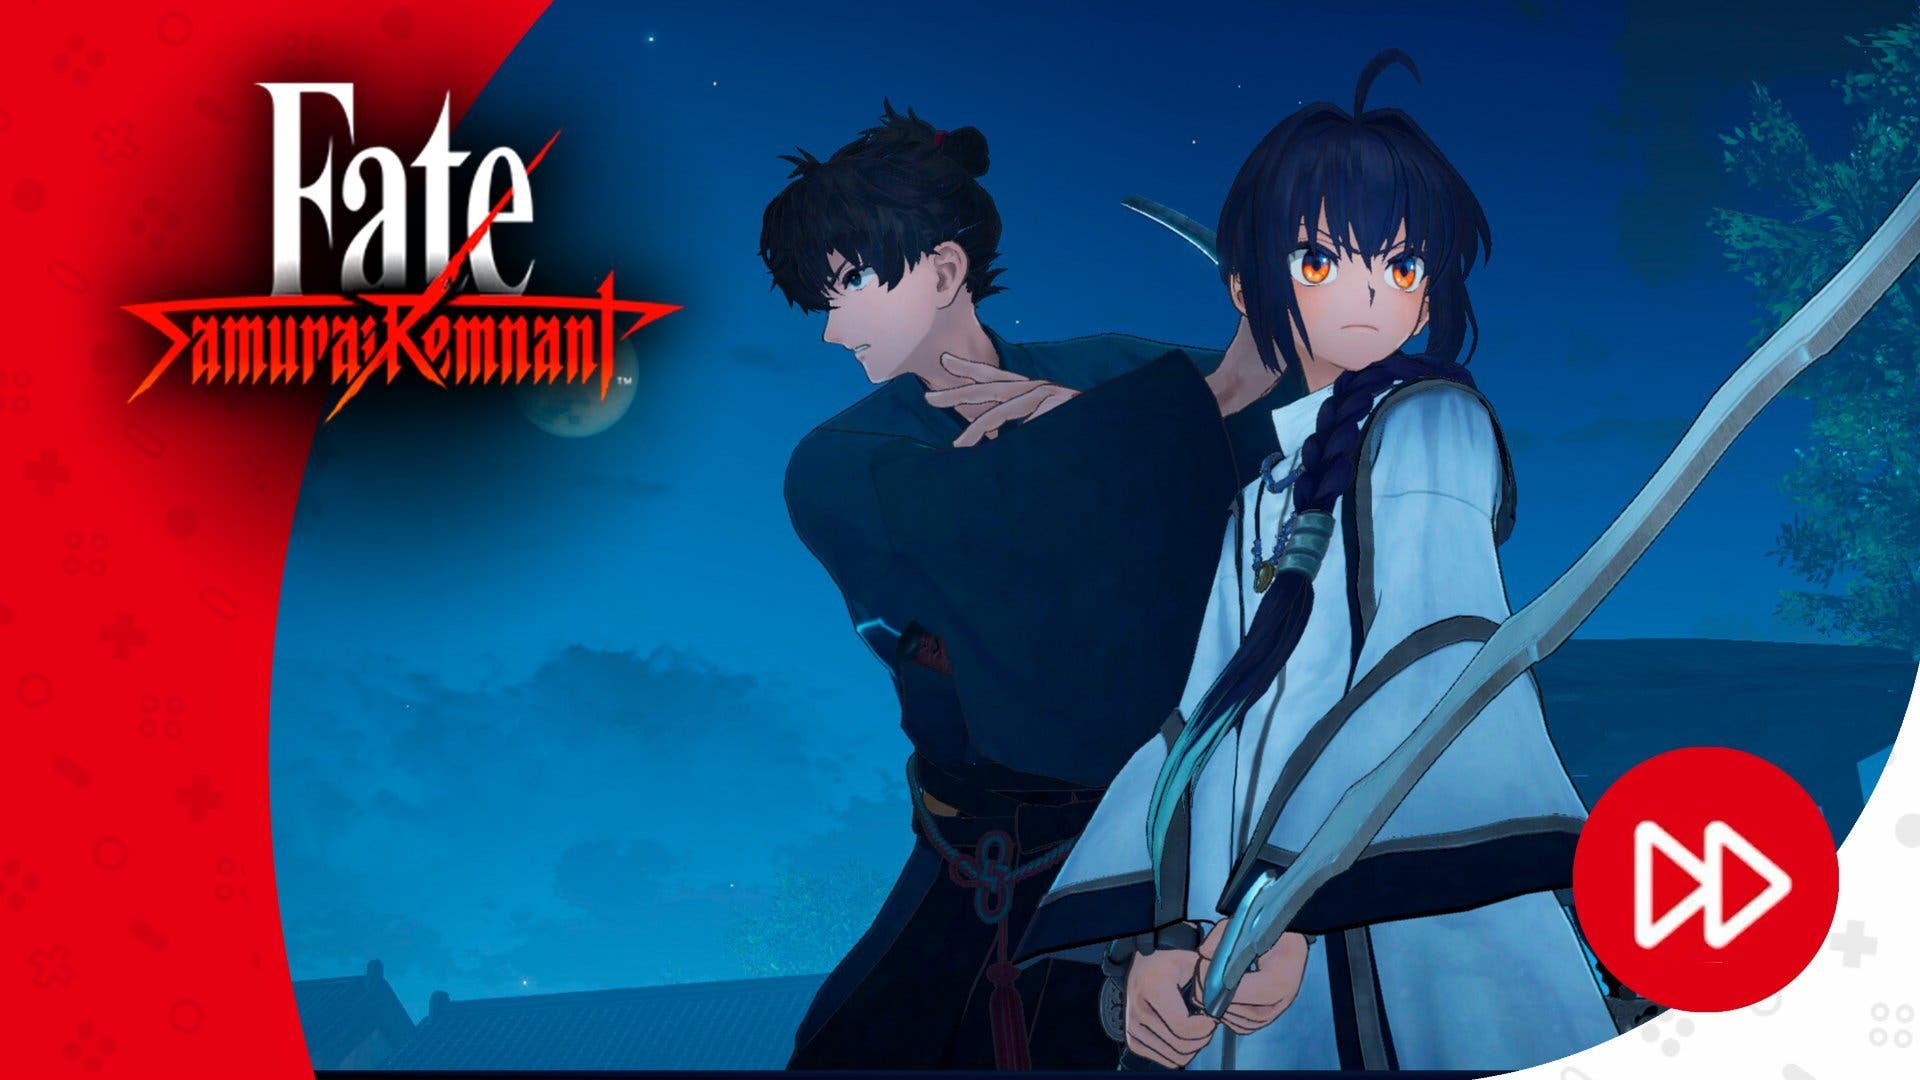 Ya hemos jugado a Fate Samurai/Remnant, el RPG más ambicioso de la serie